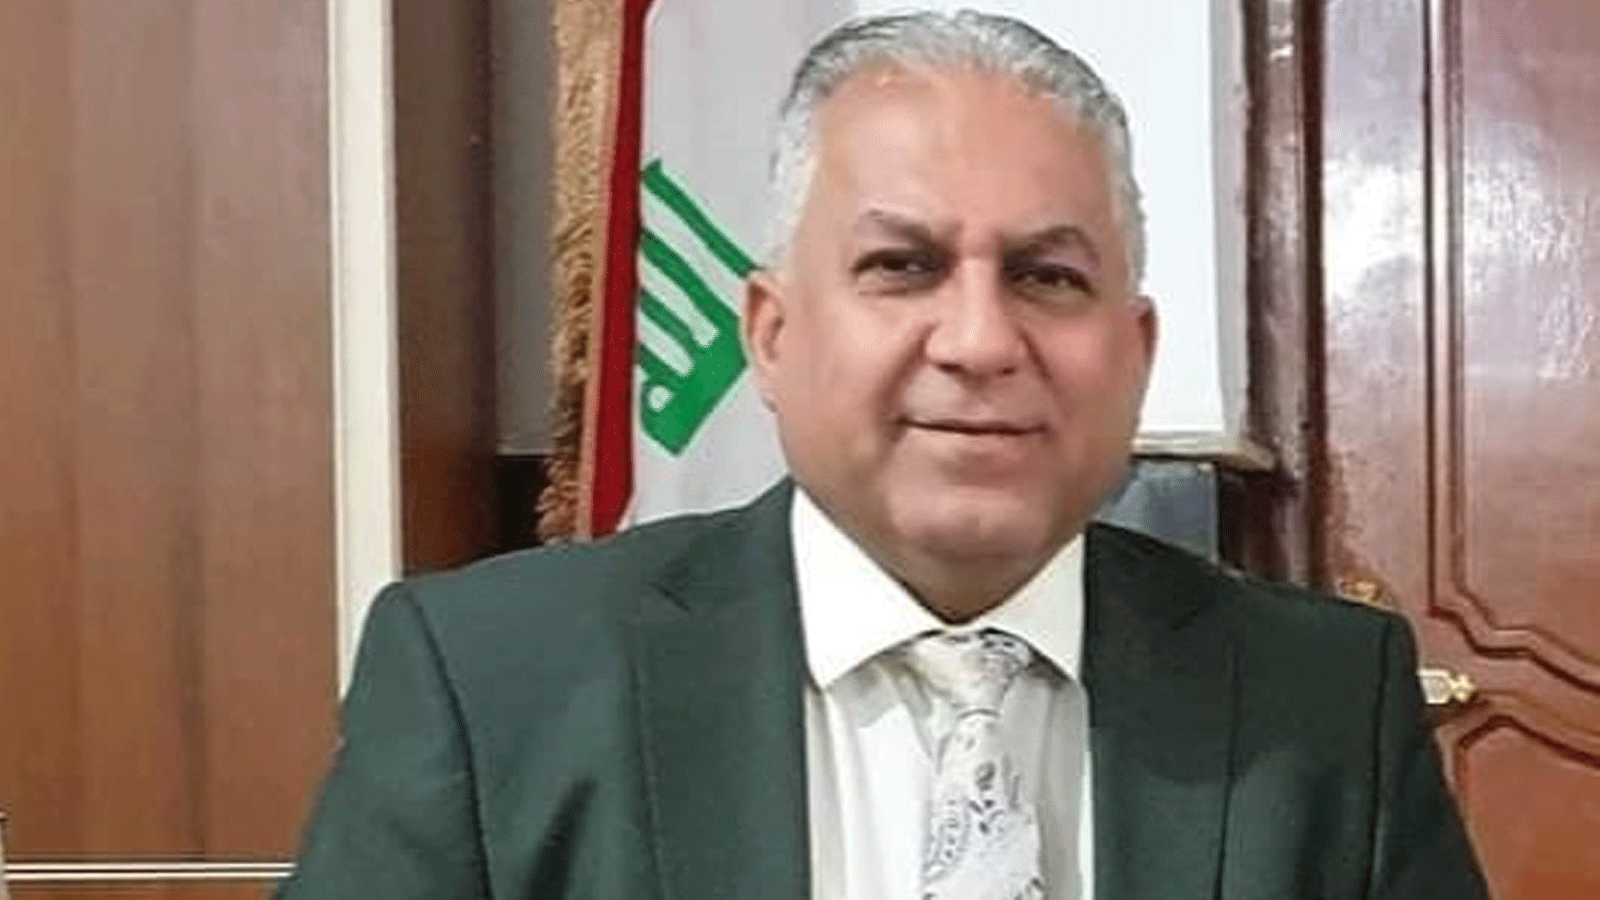 خشان:المعارضة البرلمانية المقبلة ستحاسب من أرتكب مخالفات دستورية وقانونية